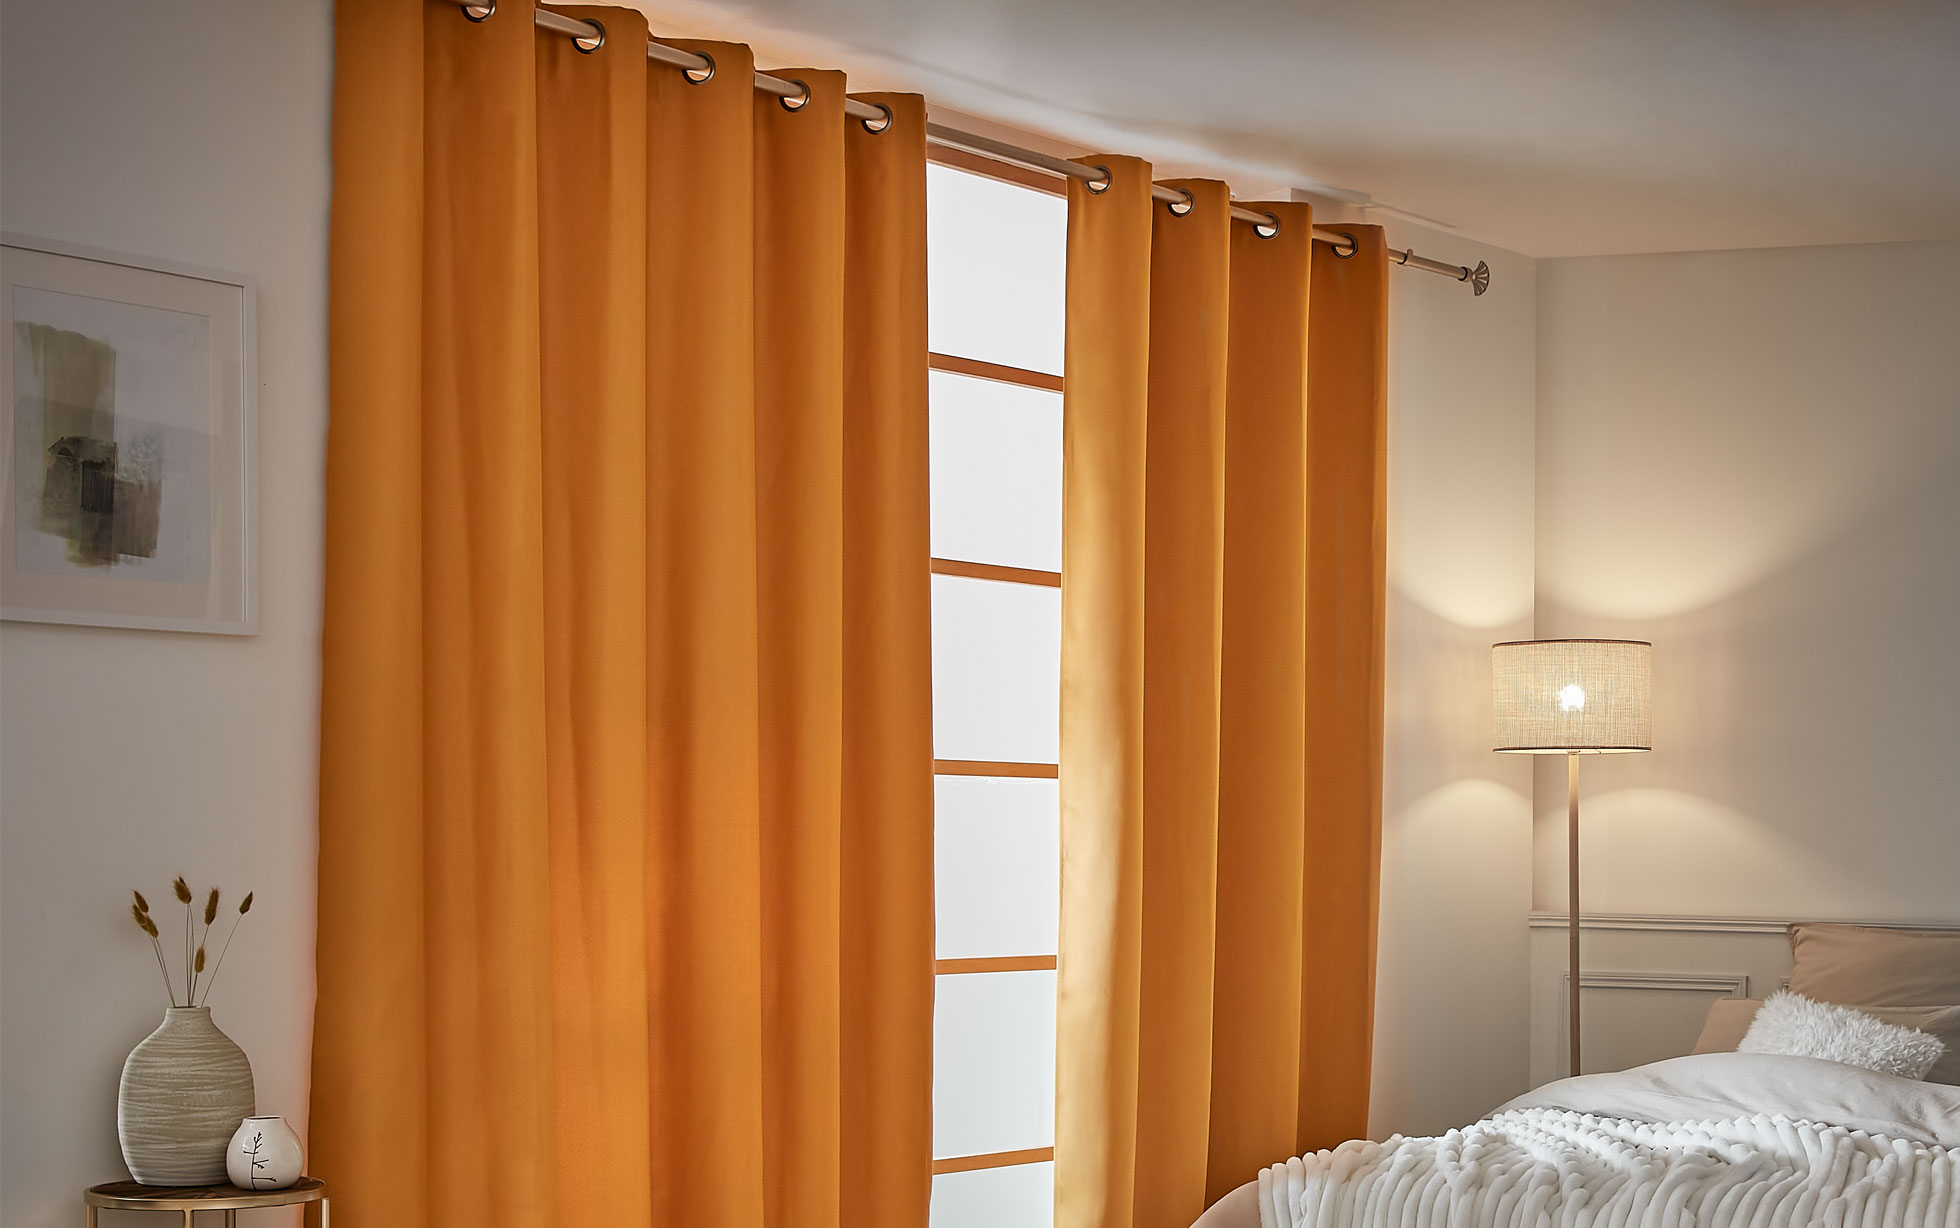 Tipos de cortinas más comunes para habitaciones infantiles